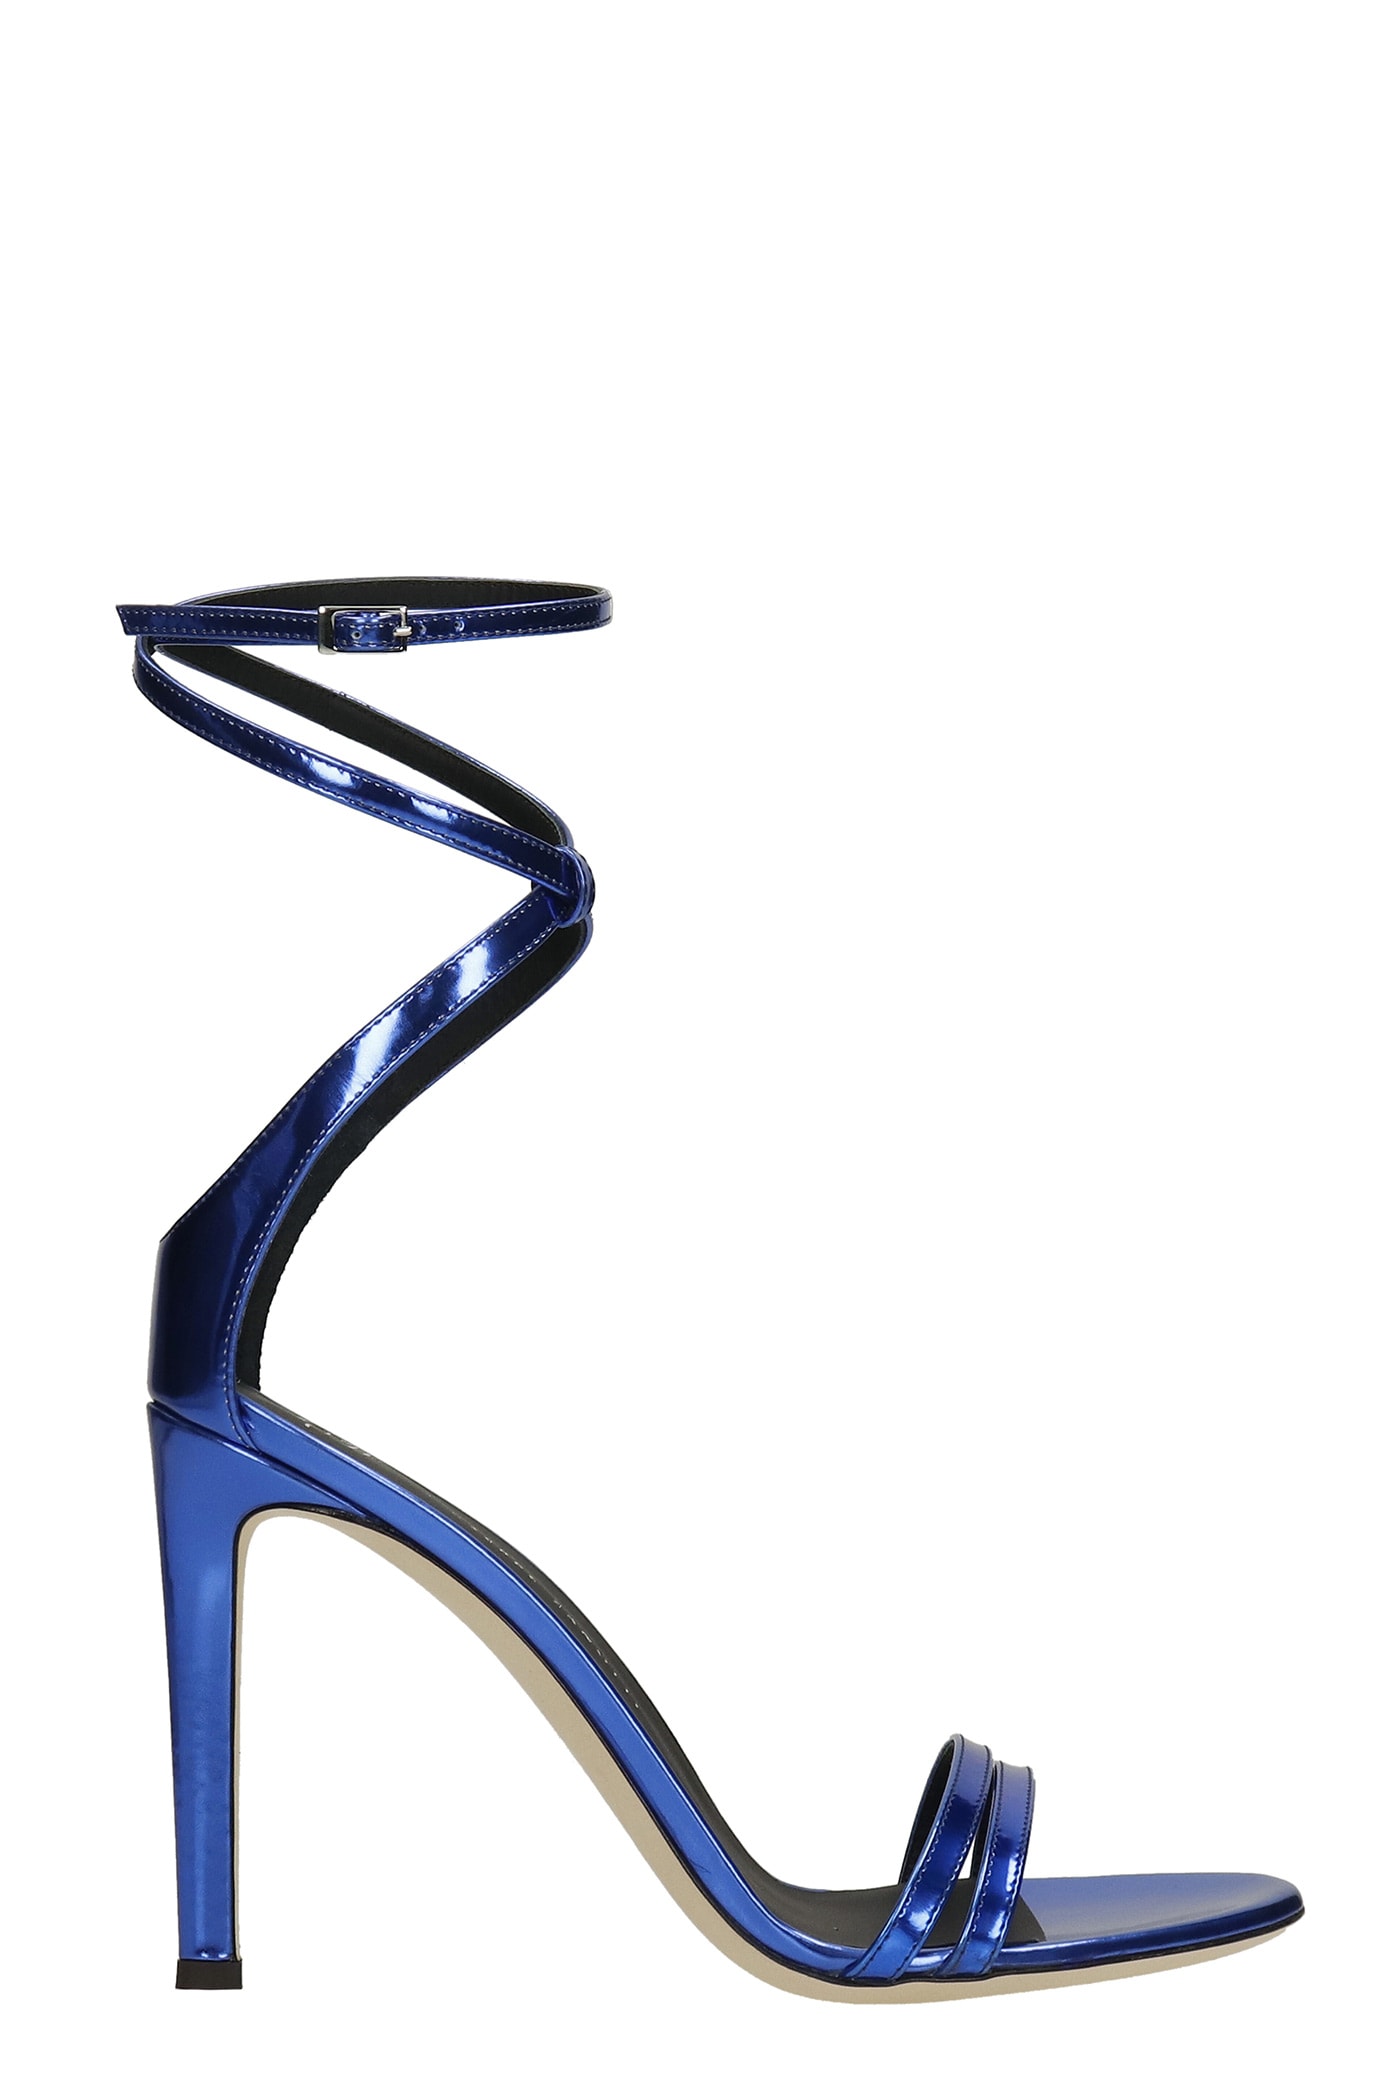 Giuseppe Zanotti Catia Sandals In Blue Leather